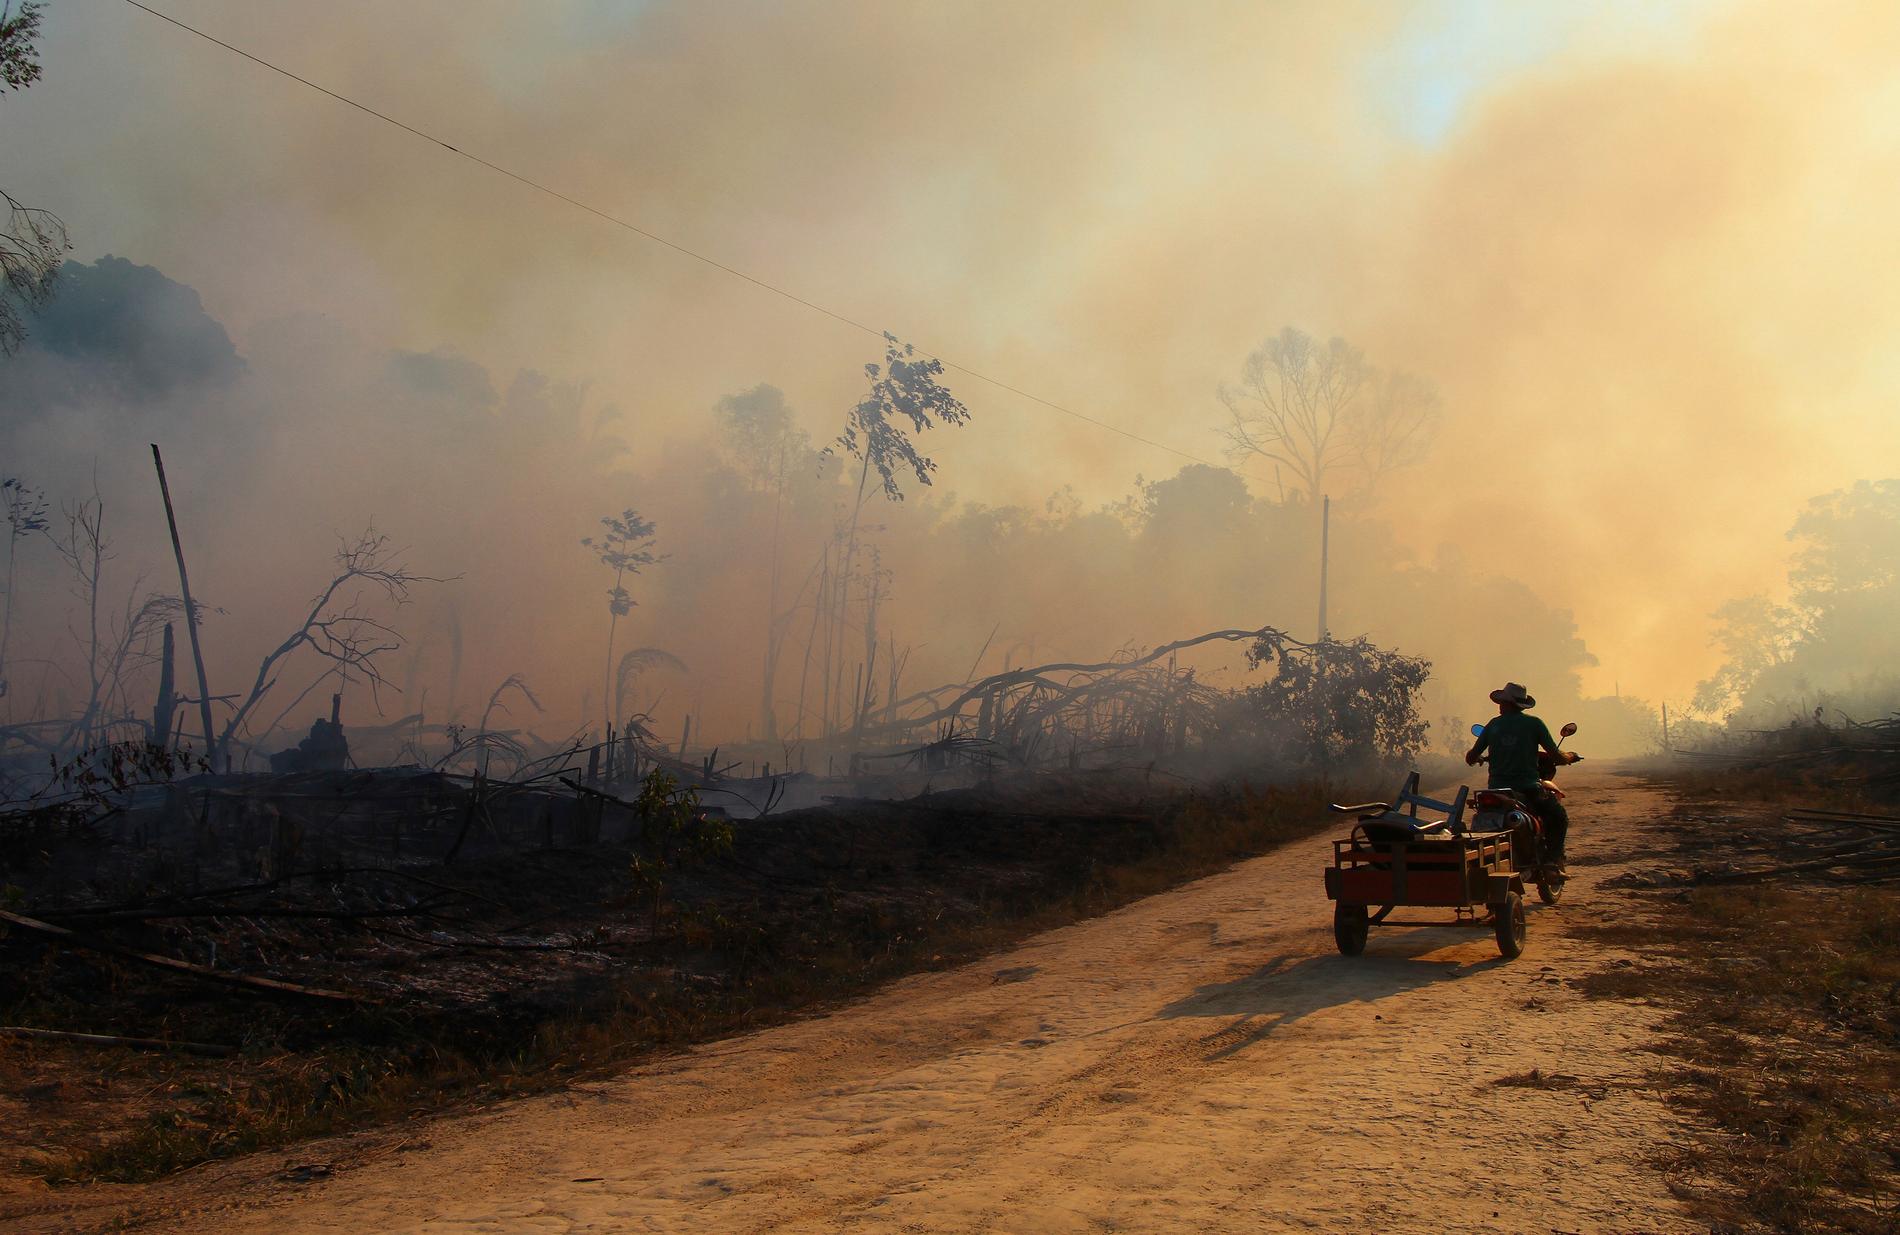 ”Vi fortsätter bränna fossila bränslen, utsläppskurvorna pekar konstant åt fel håll och Amazonas skövlas just nu snabbare än någonsin.”